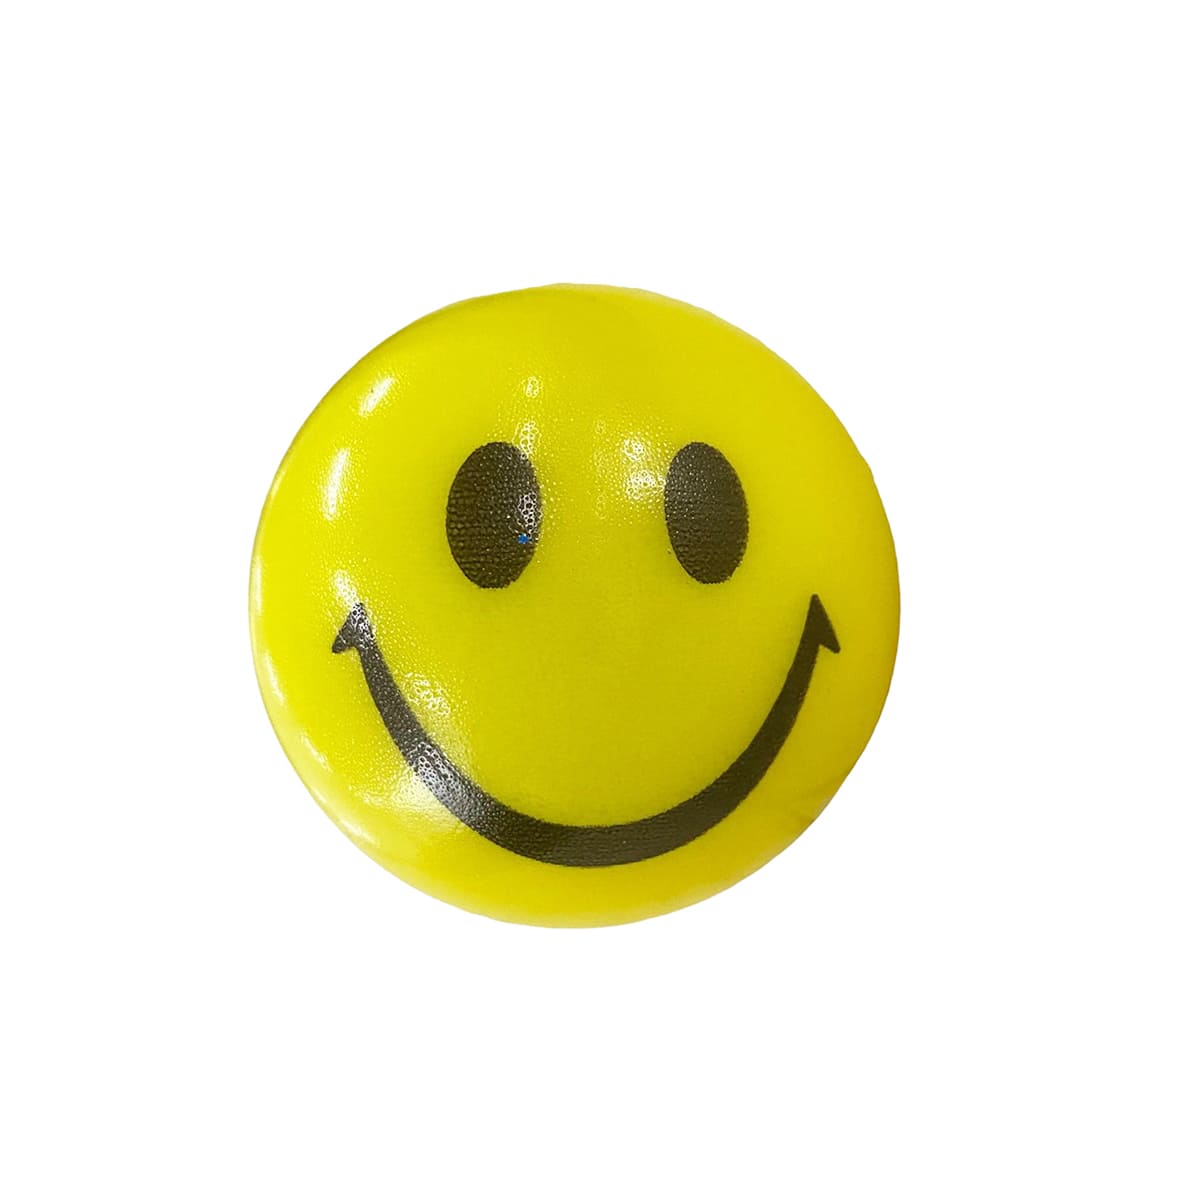 Um brinquedo amarelo com um grande sorriso nele